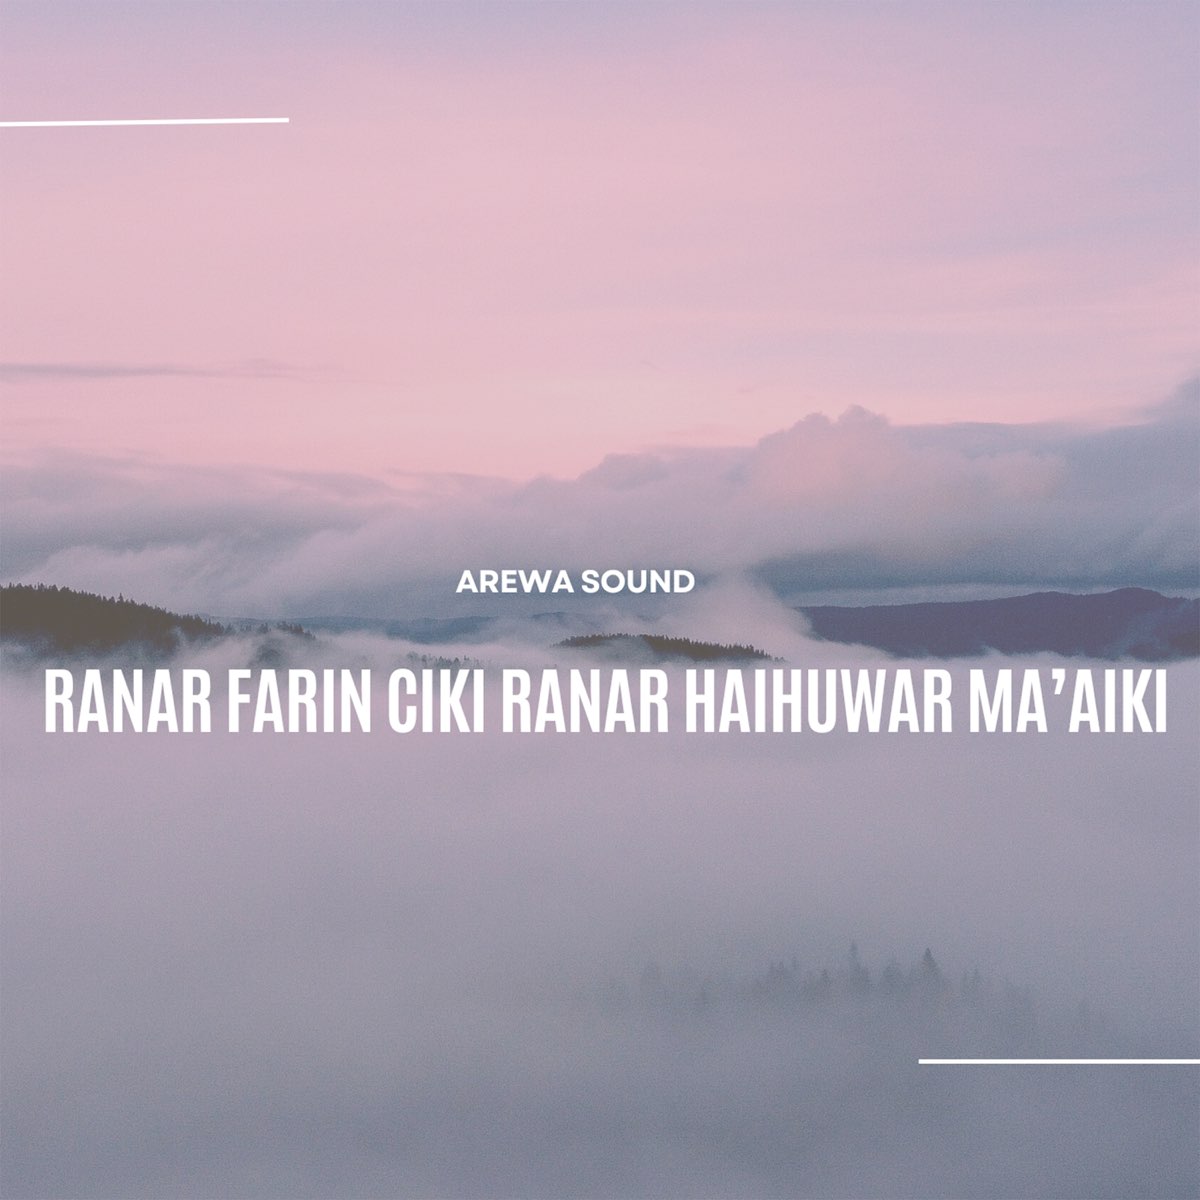 Ranar Farin Ciki Ranar Haihuwar Ma'aiki - Single de Arewa Sound no Apple Music